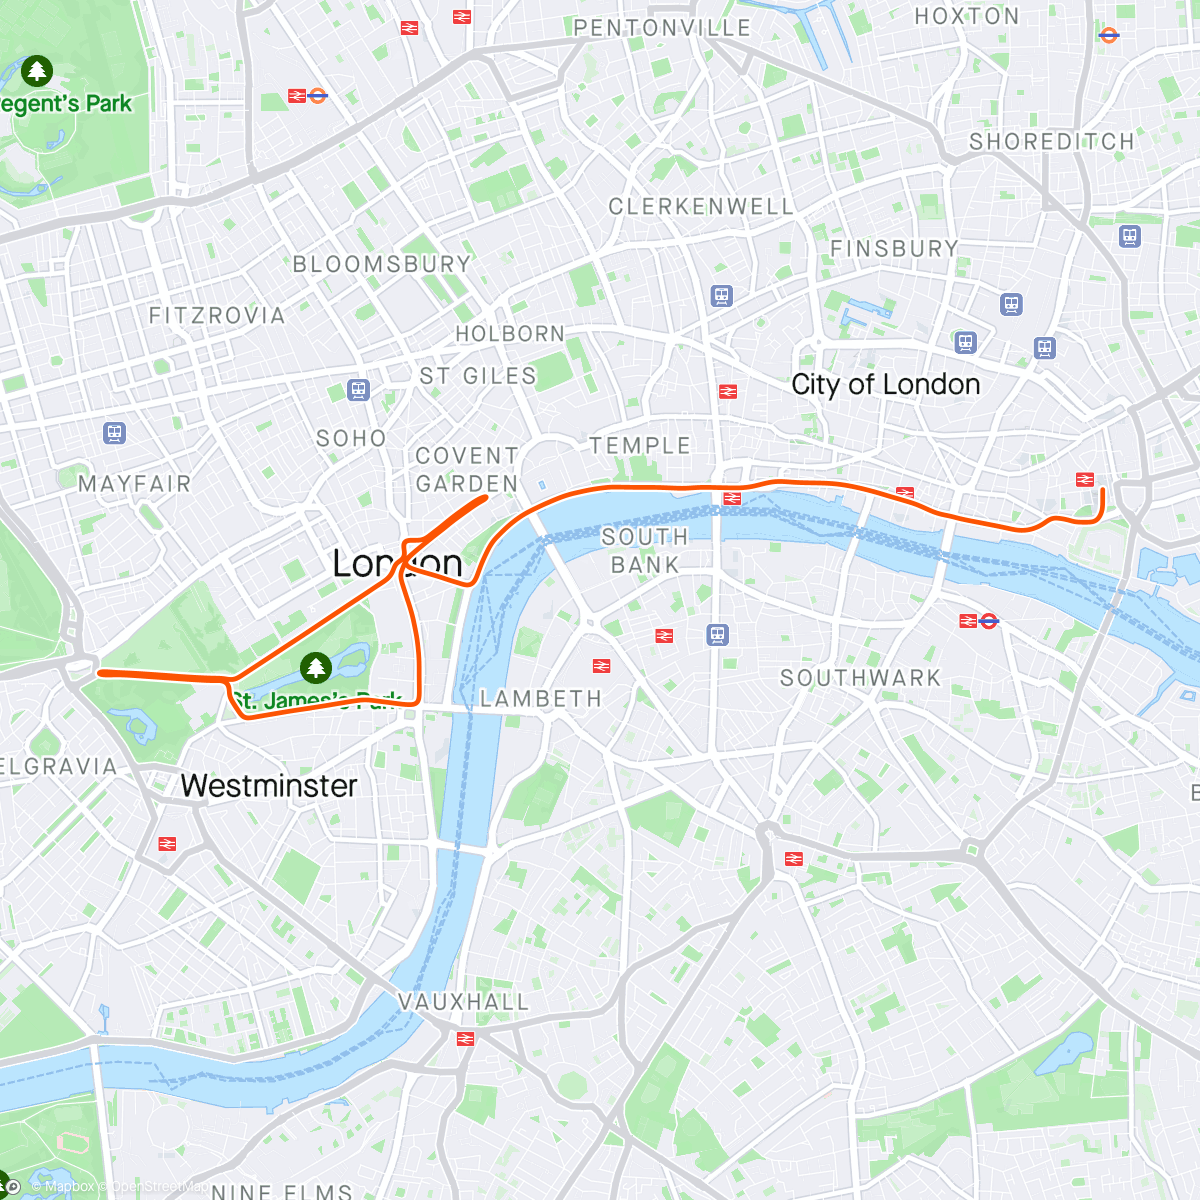 「Zwift - Race: Stage 5: Lap It Up - London Classique (D) on Classique in London」活動的地圖